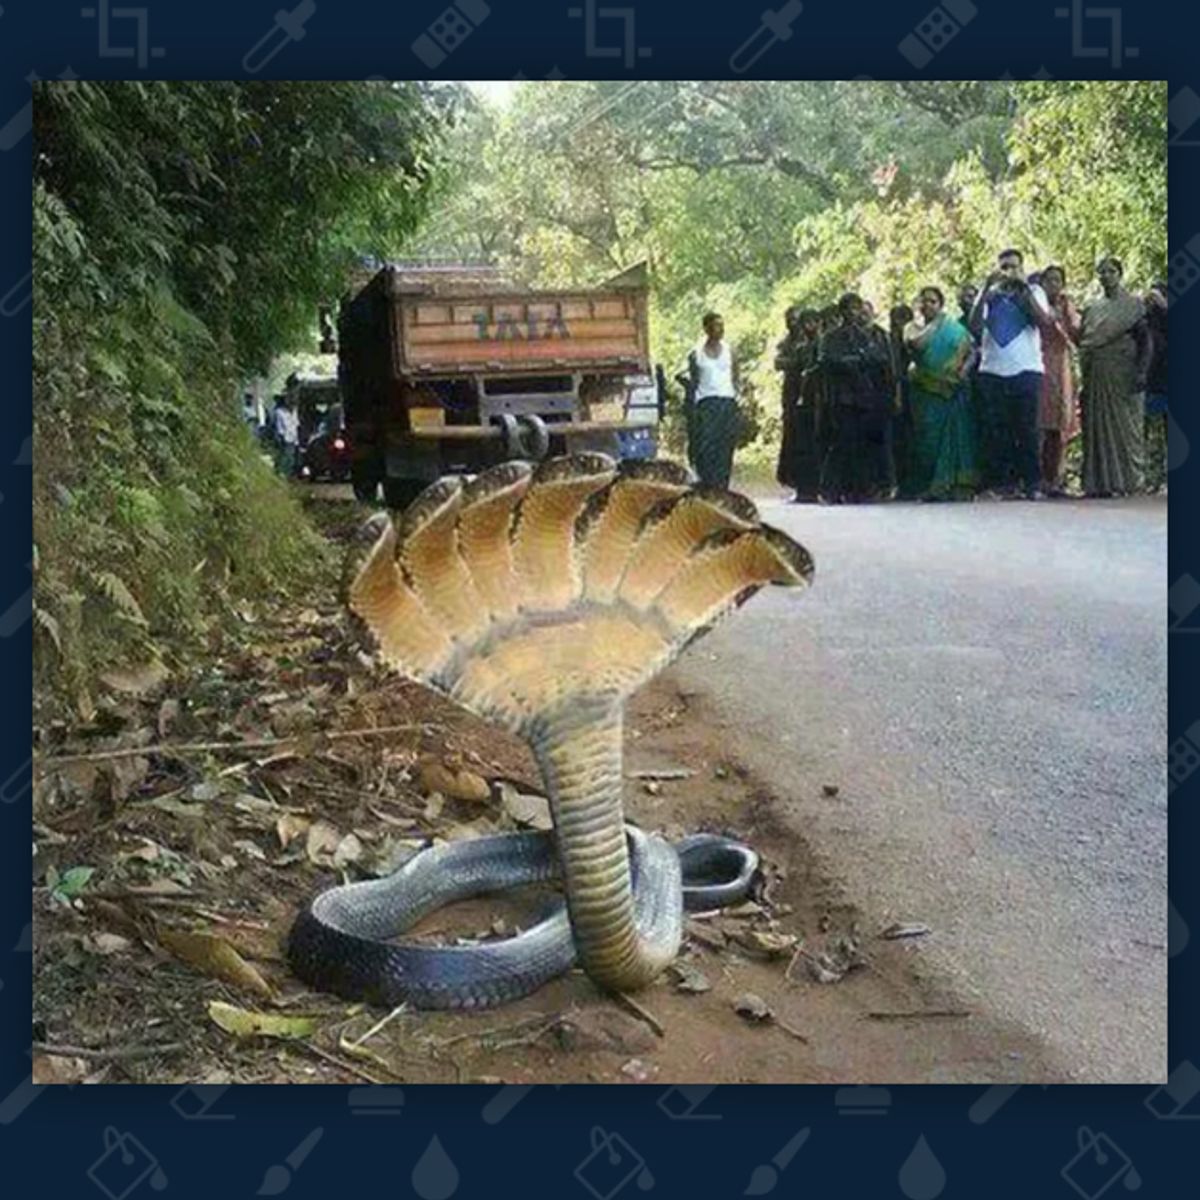 10 headed snake real